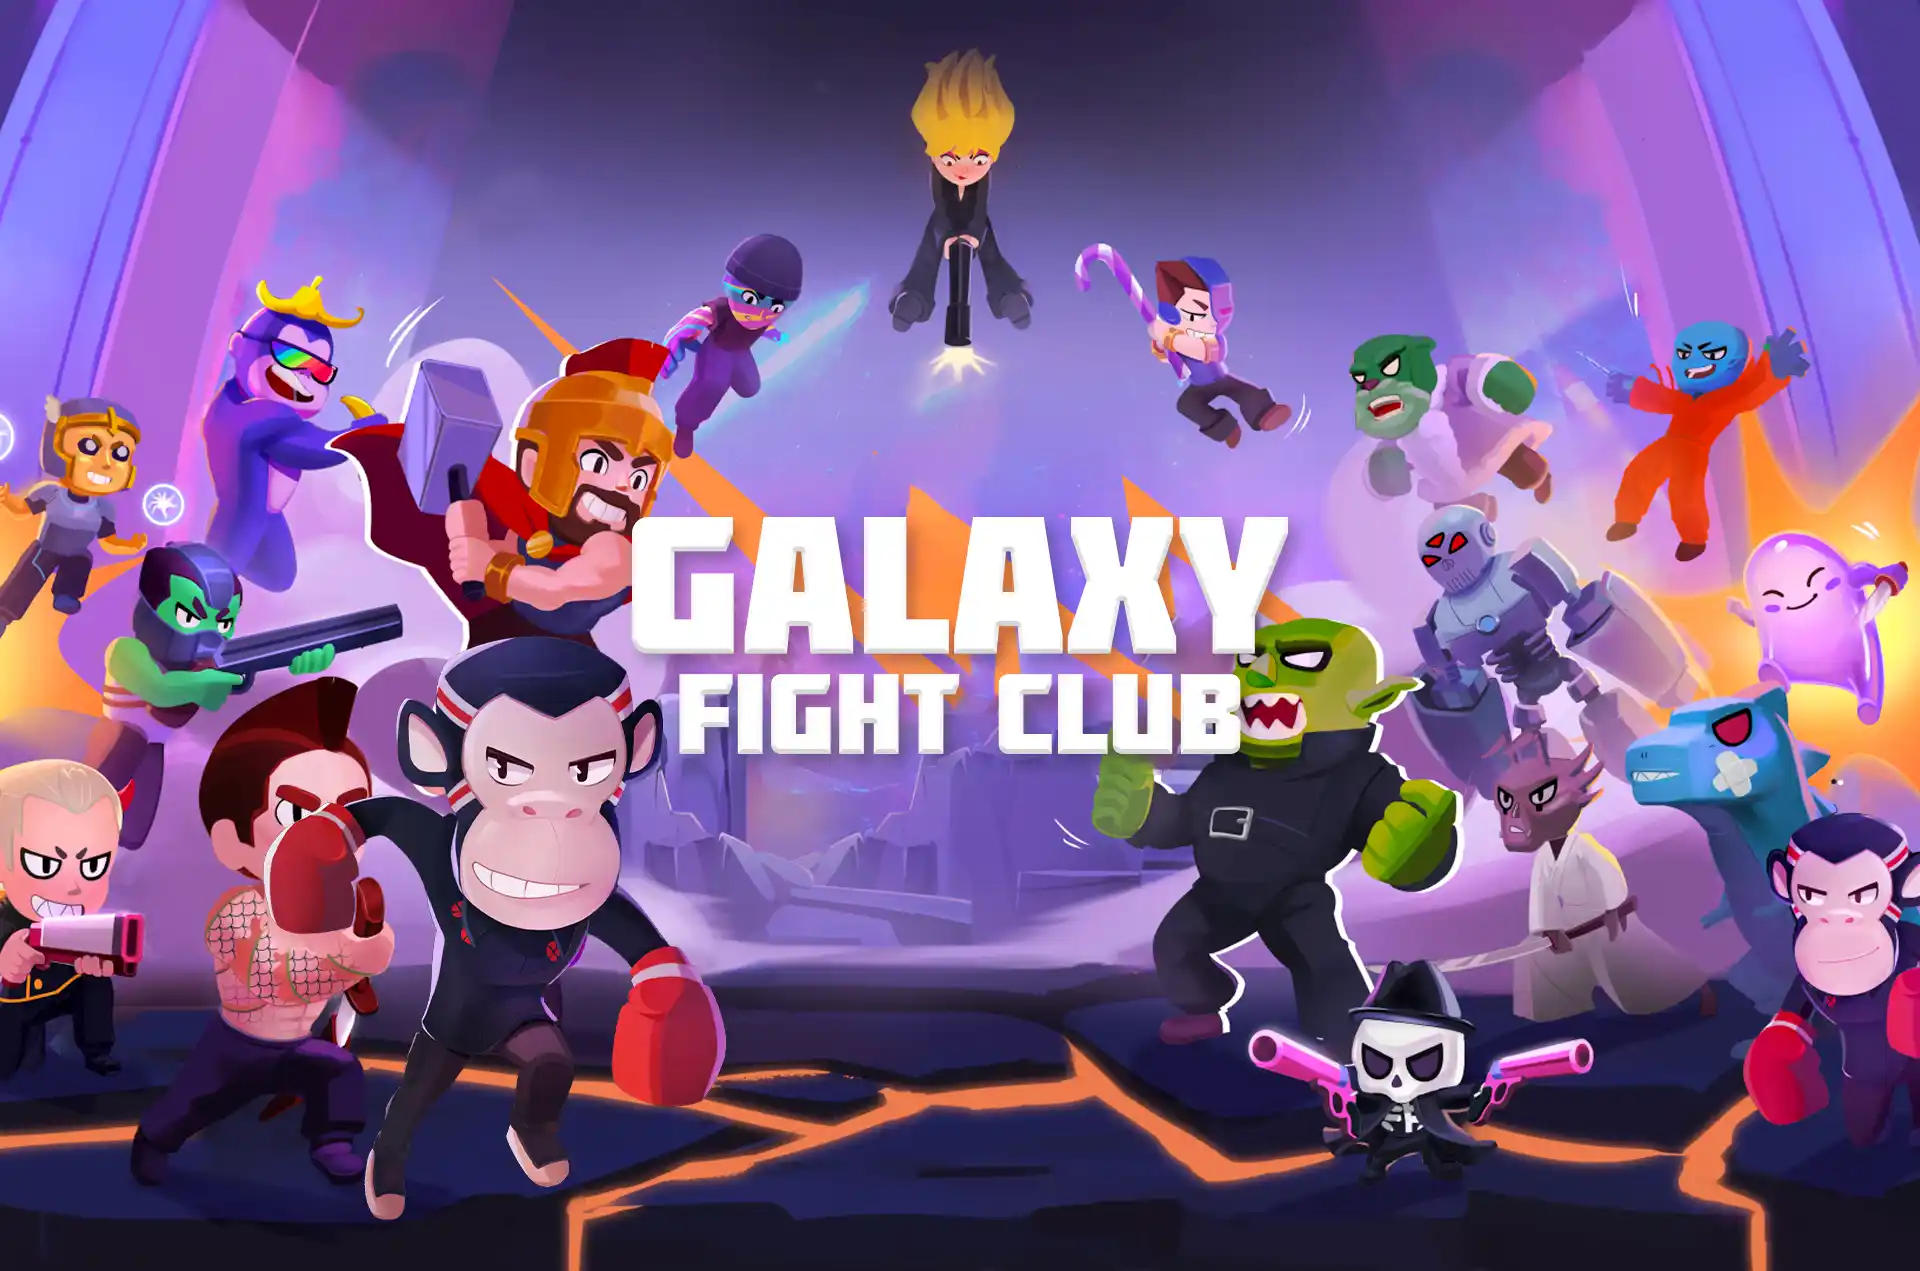 Presenting you Galaxy Fight Club